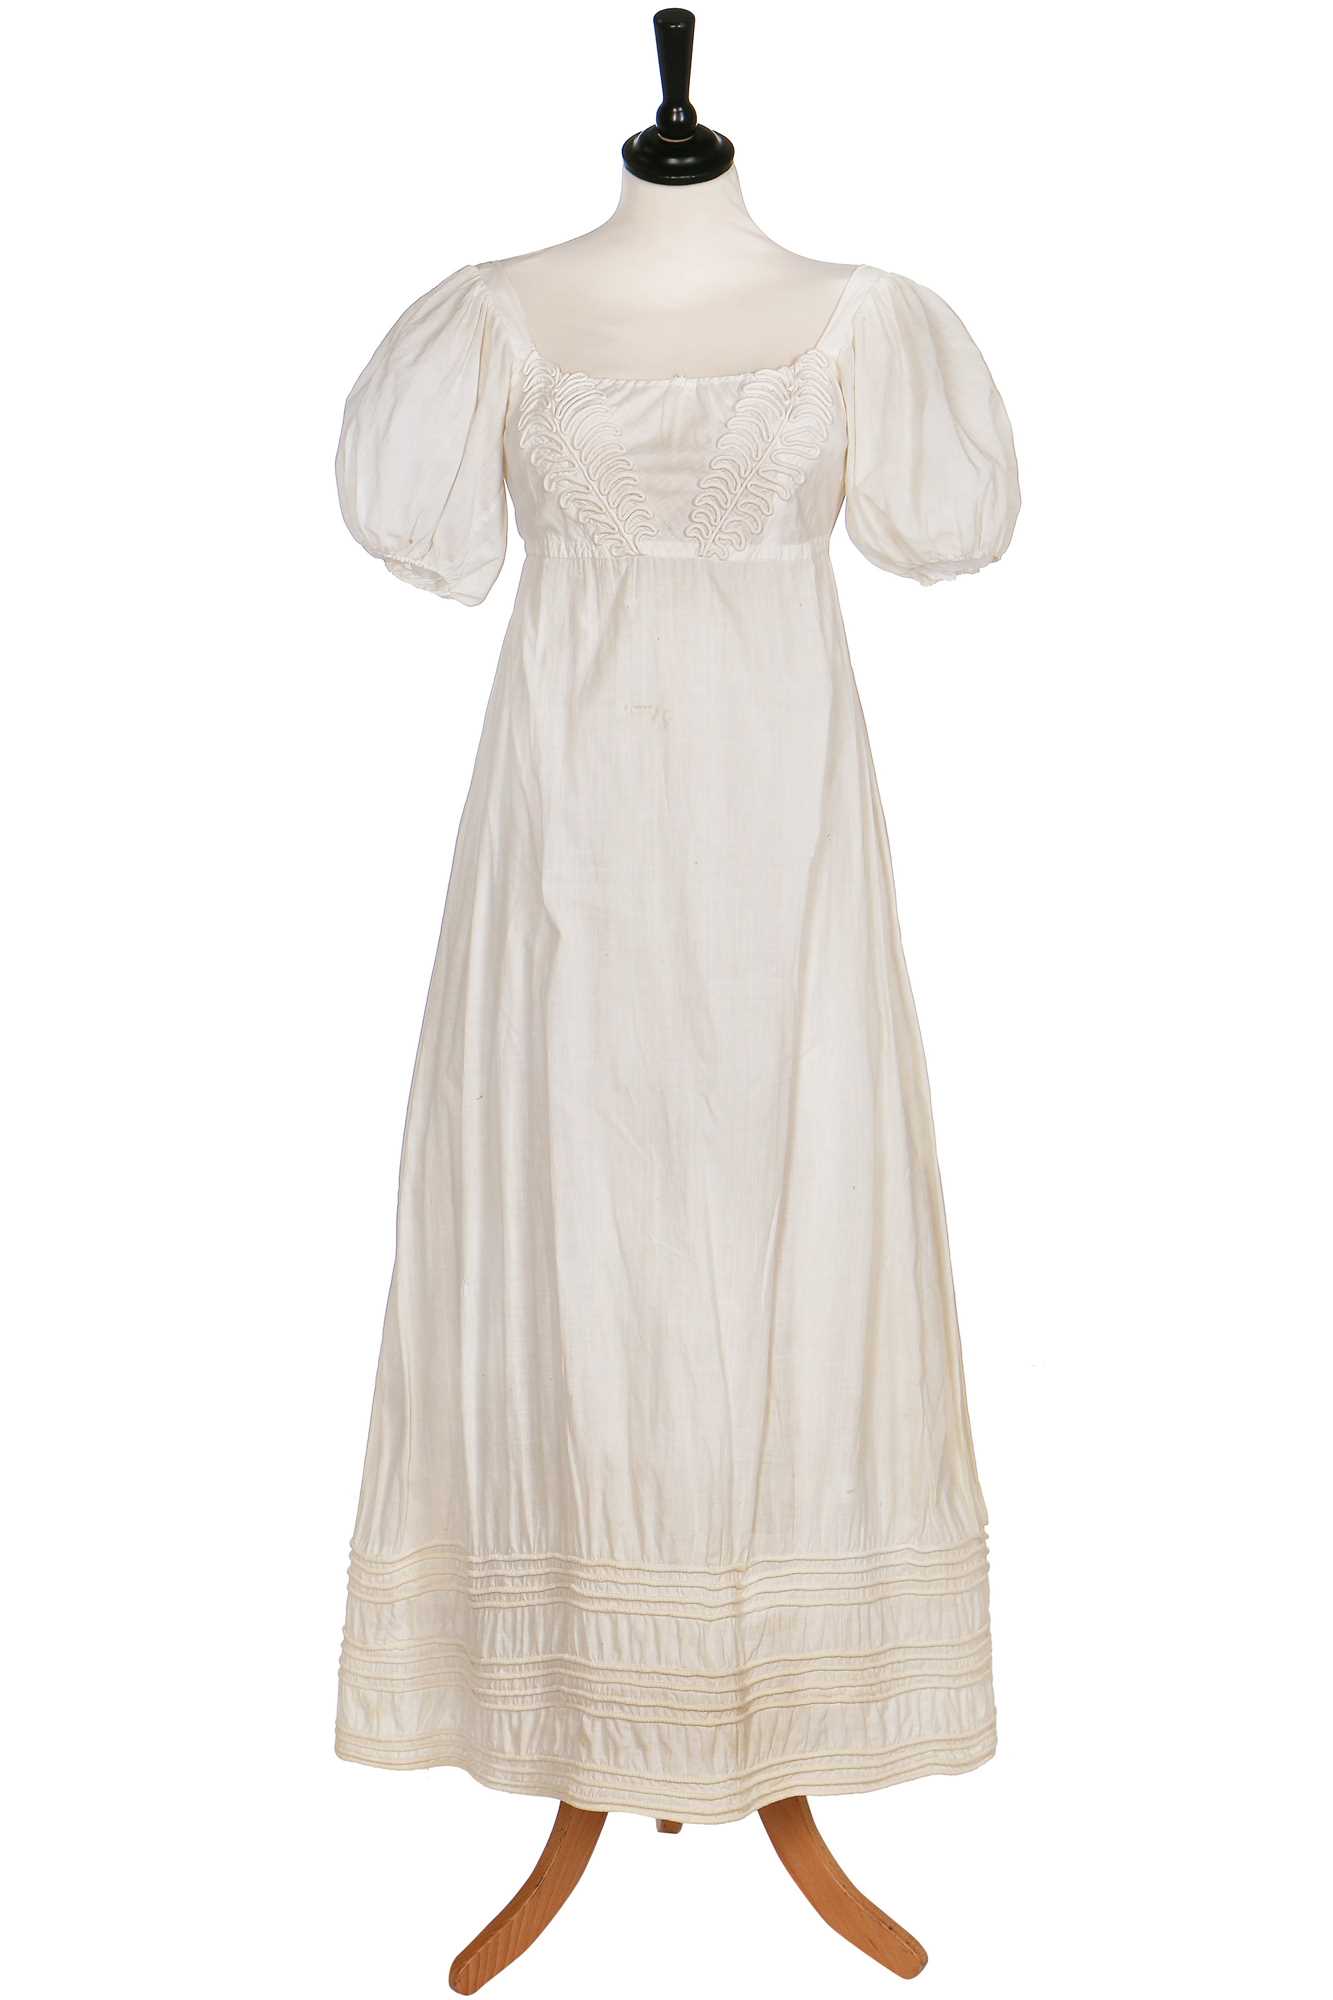 Lot 378 - A white cotton dress, circa 1825,